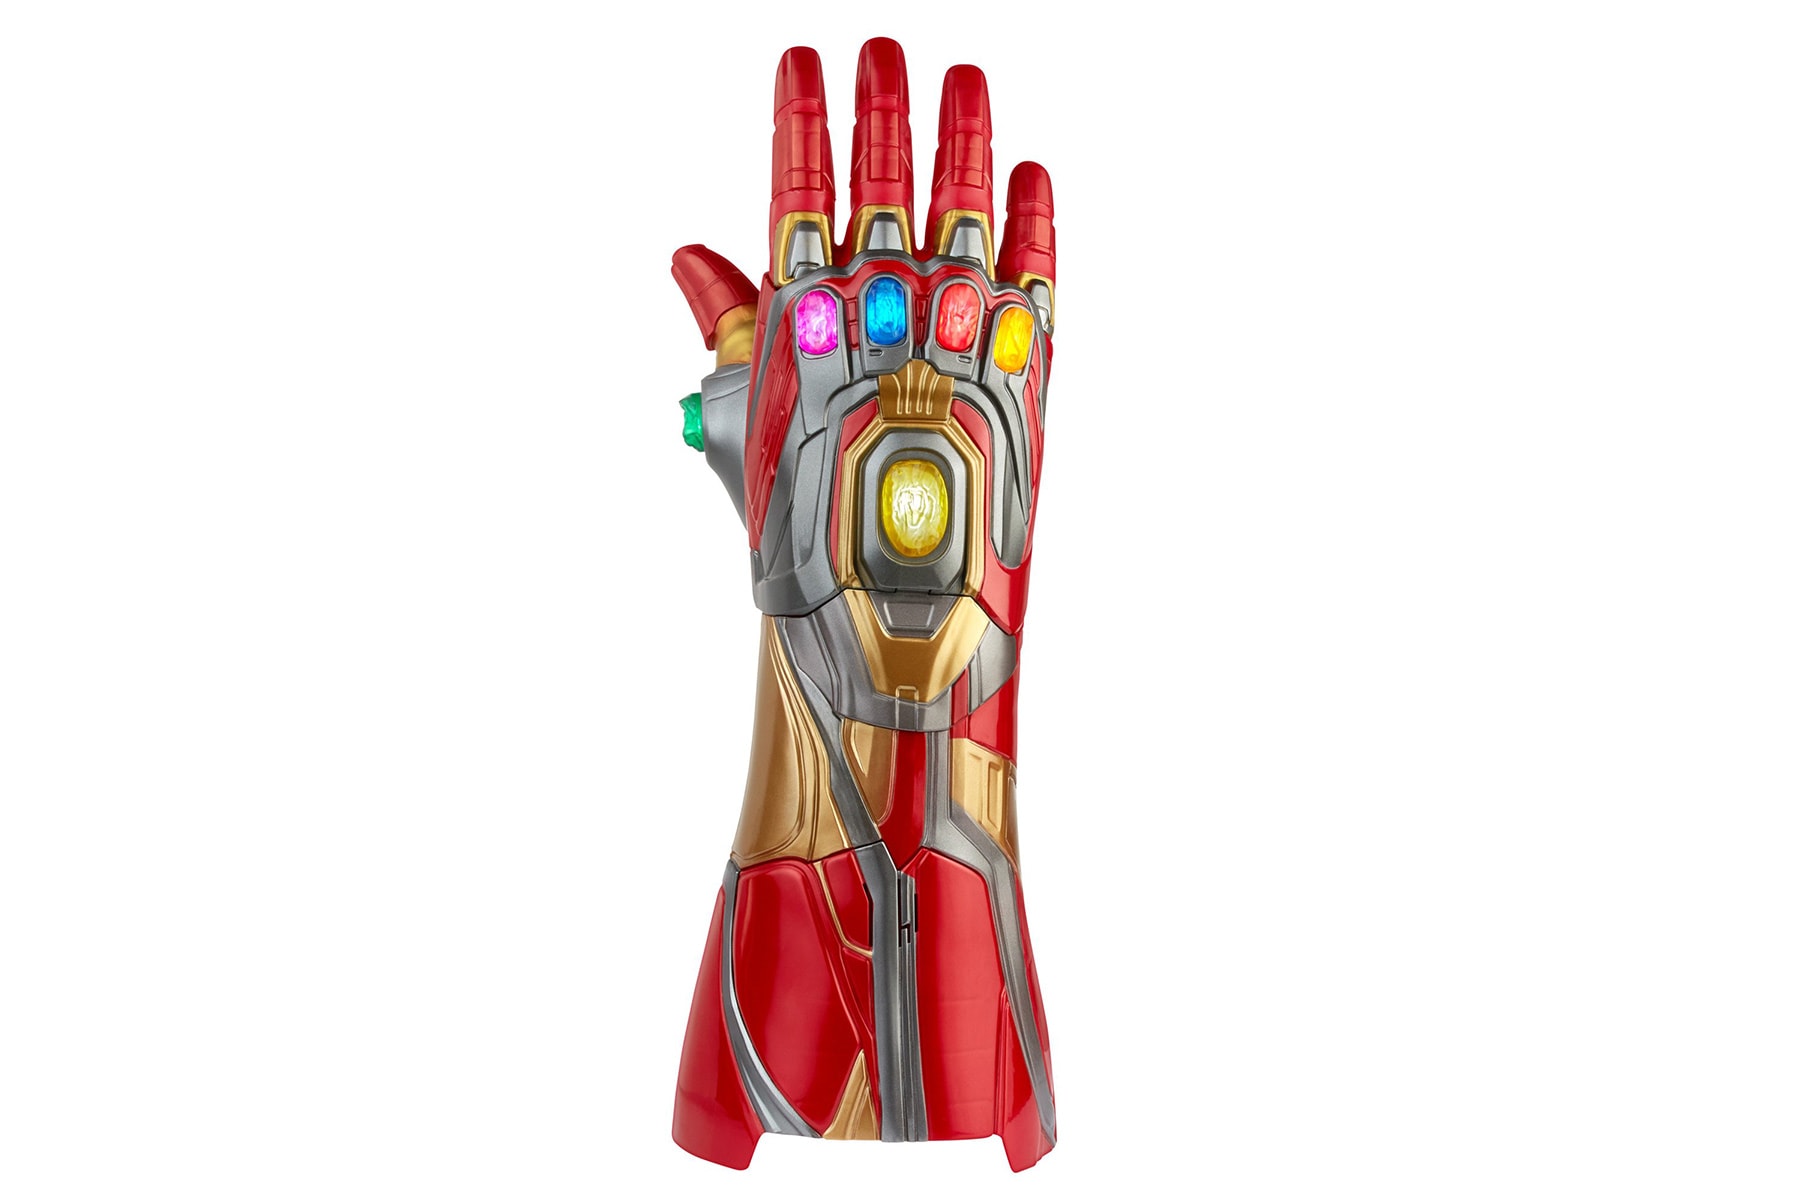 Hasbro 推出 Iron Man 配戴之 1:1 真實尺寸「Nano Gauntlet 無限手套」